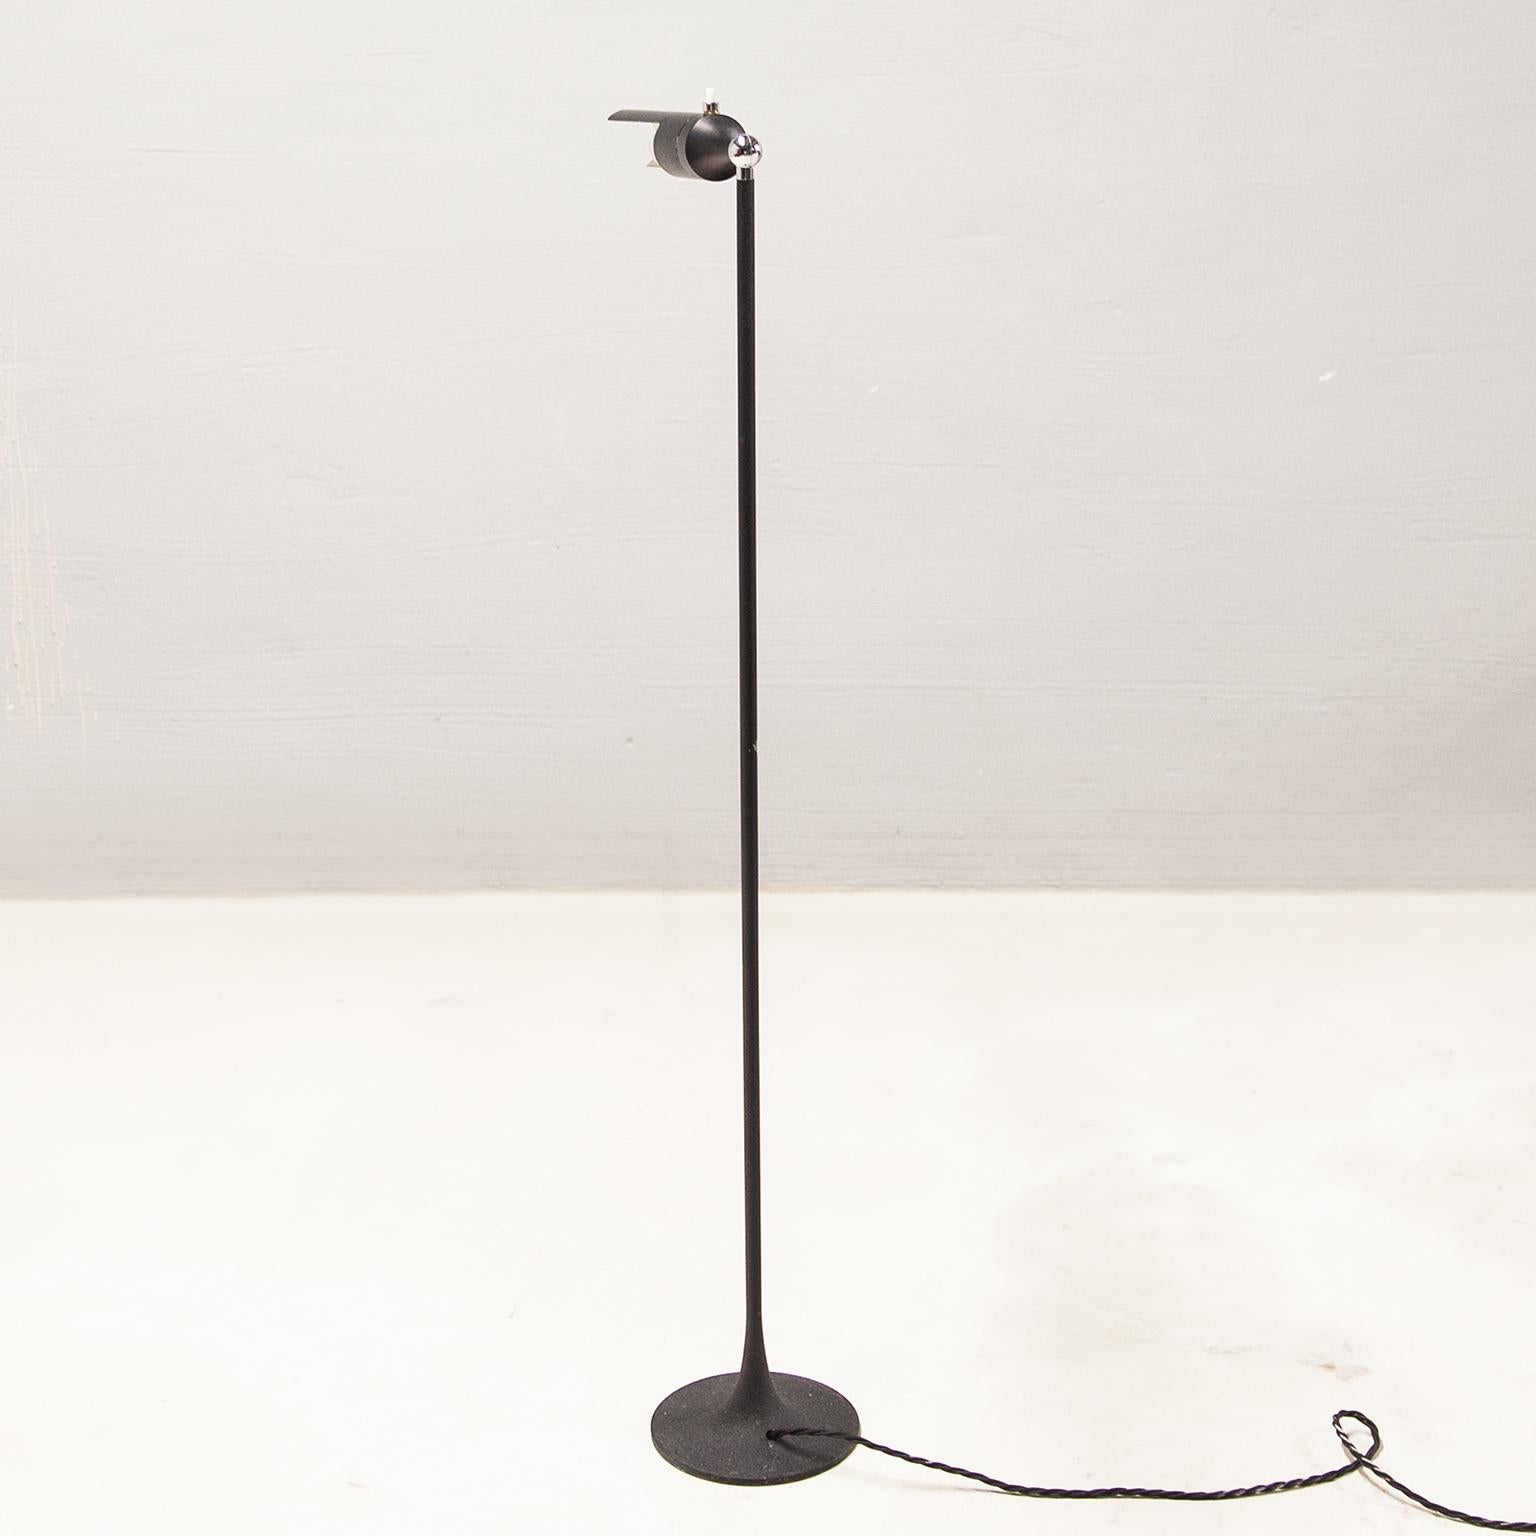 Painted Gino Sarfatti Arteluce Floor Lamp 1086 For Sale